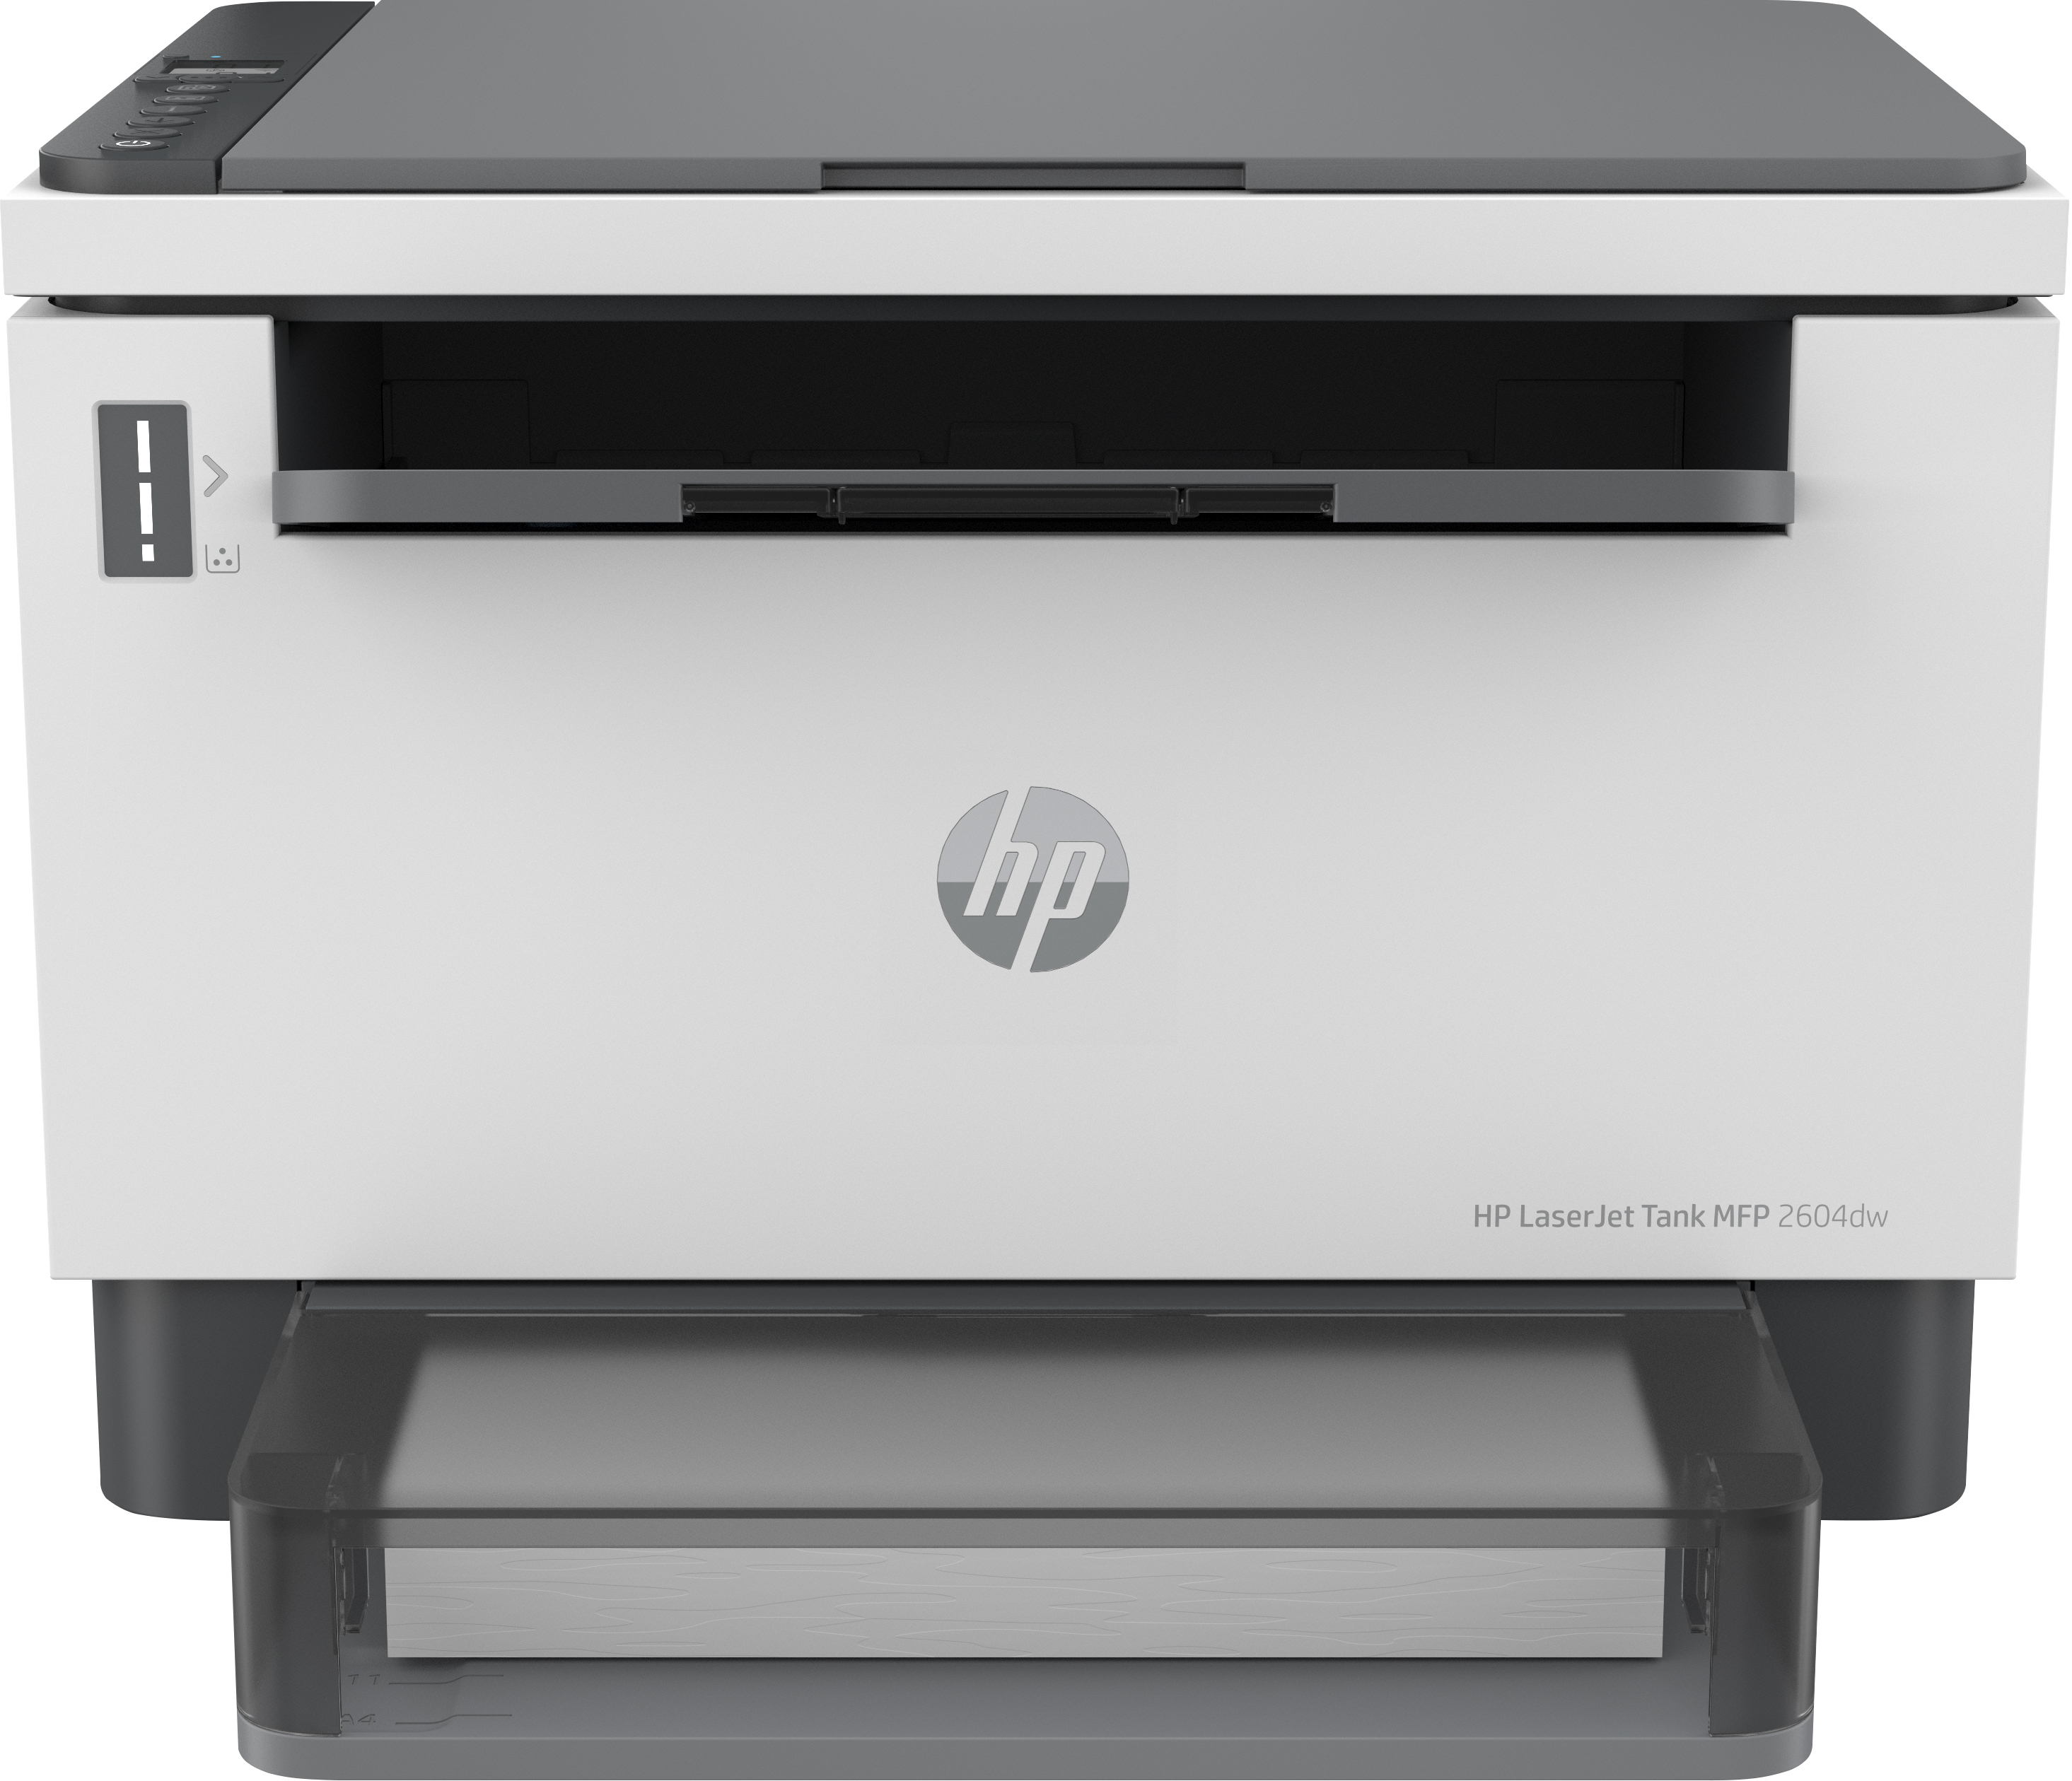 Image of HP LaserJet Stampante multifunzione Tank 2604dw, Bianco e nero, Stampante per Aziendale, wireless; Stampa fronte/retro; Scansione verso e-mail; Scansione su PDF